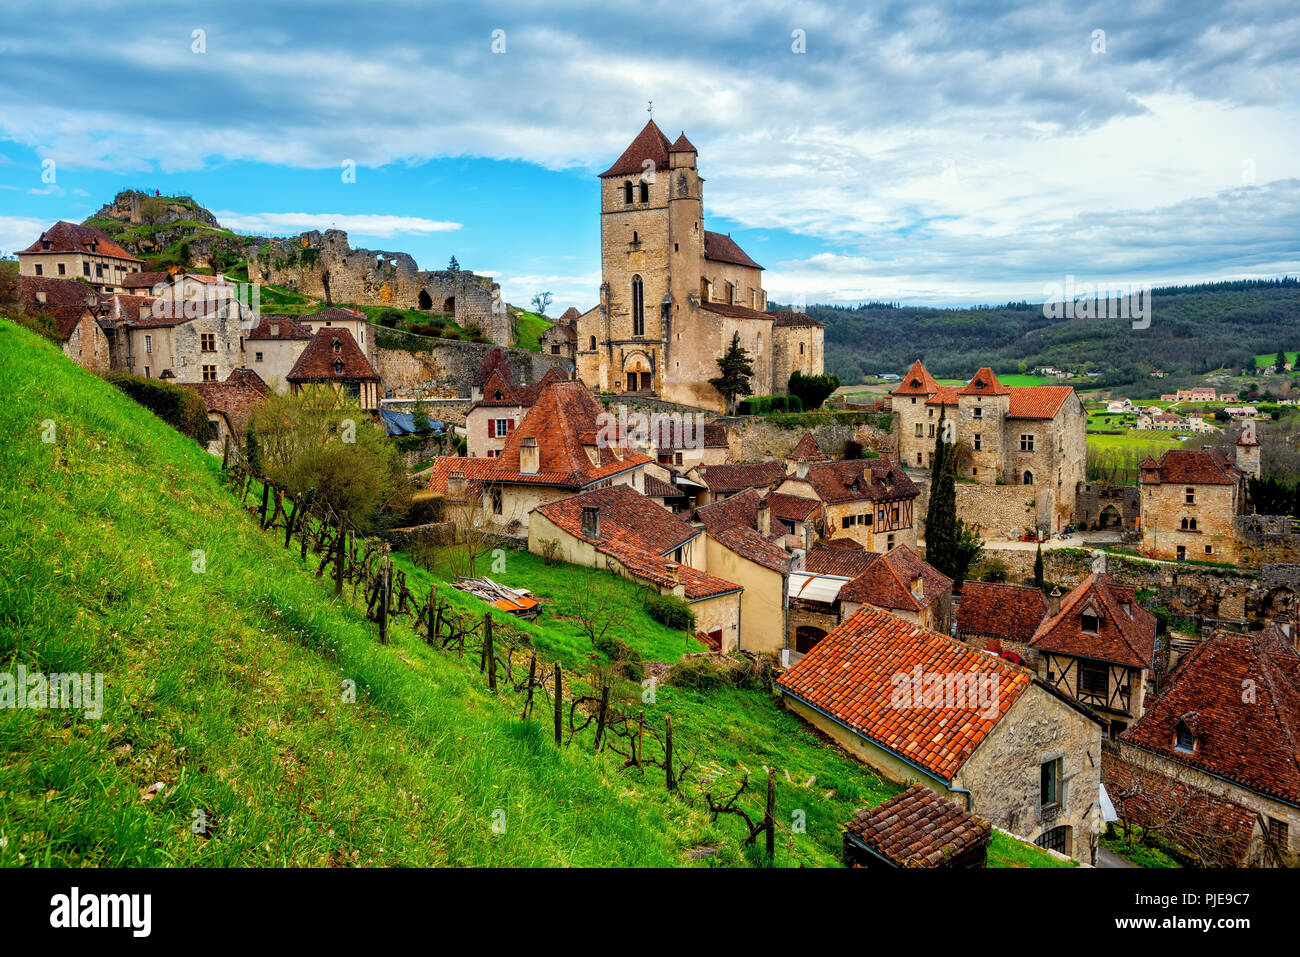 Centro medievale della città vecchia di Saint-Cirq-Lapopie, uno dei più bei villaggi di Francia (Les Plus Beaux Villages) e una meta turistica molto destinati Foto Stock